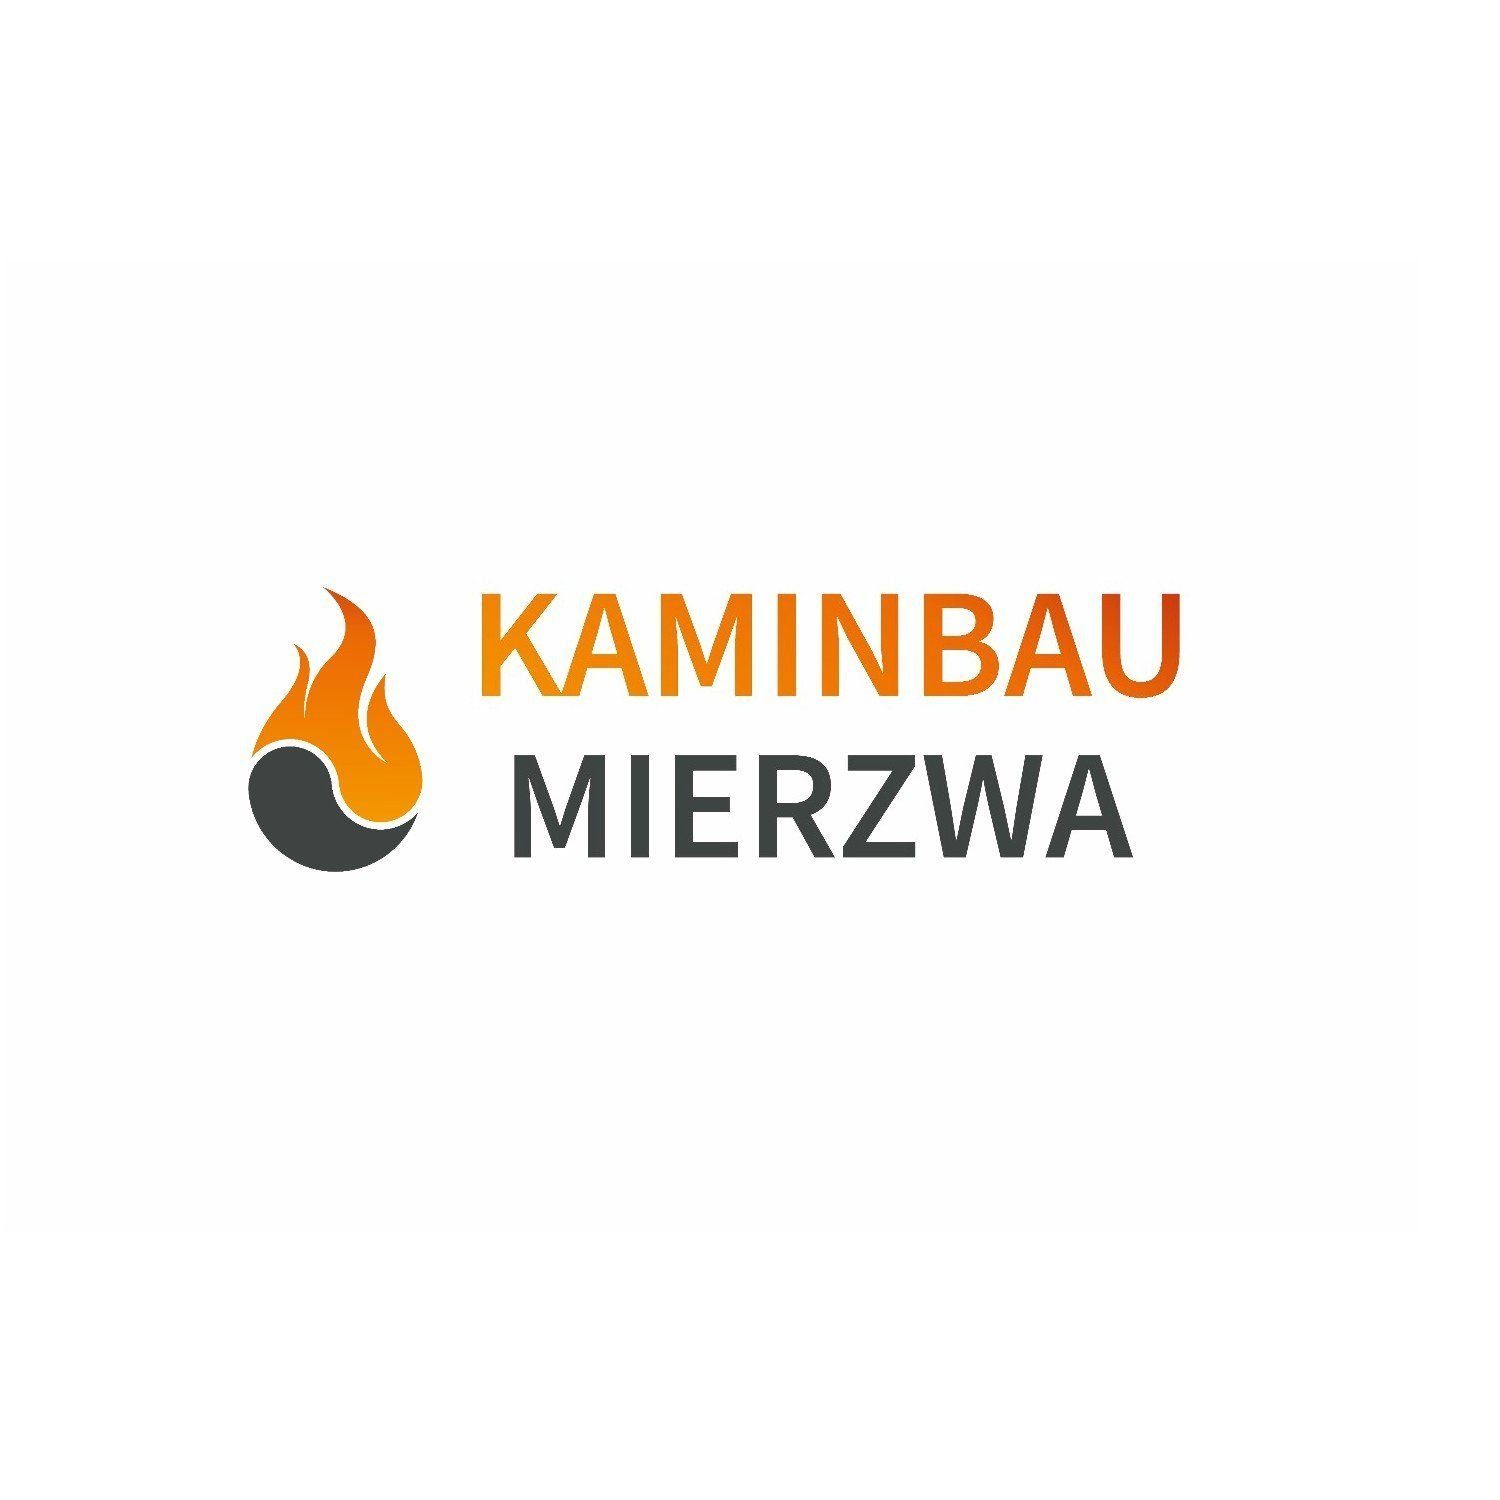 Tischkamin, Kaminbau Sorrento Mierzwa & (Premium), Schwarz Pompei Echtfeuer-Dekokamin Ethanolkamin Gelkamin,